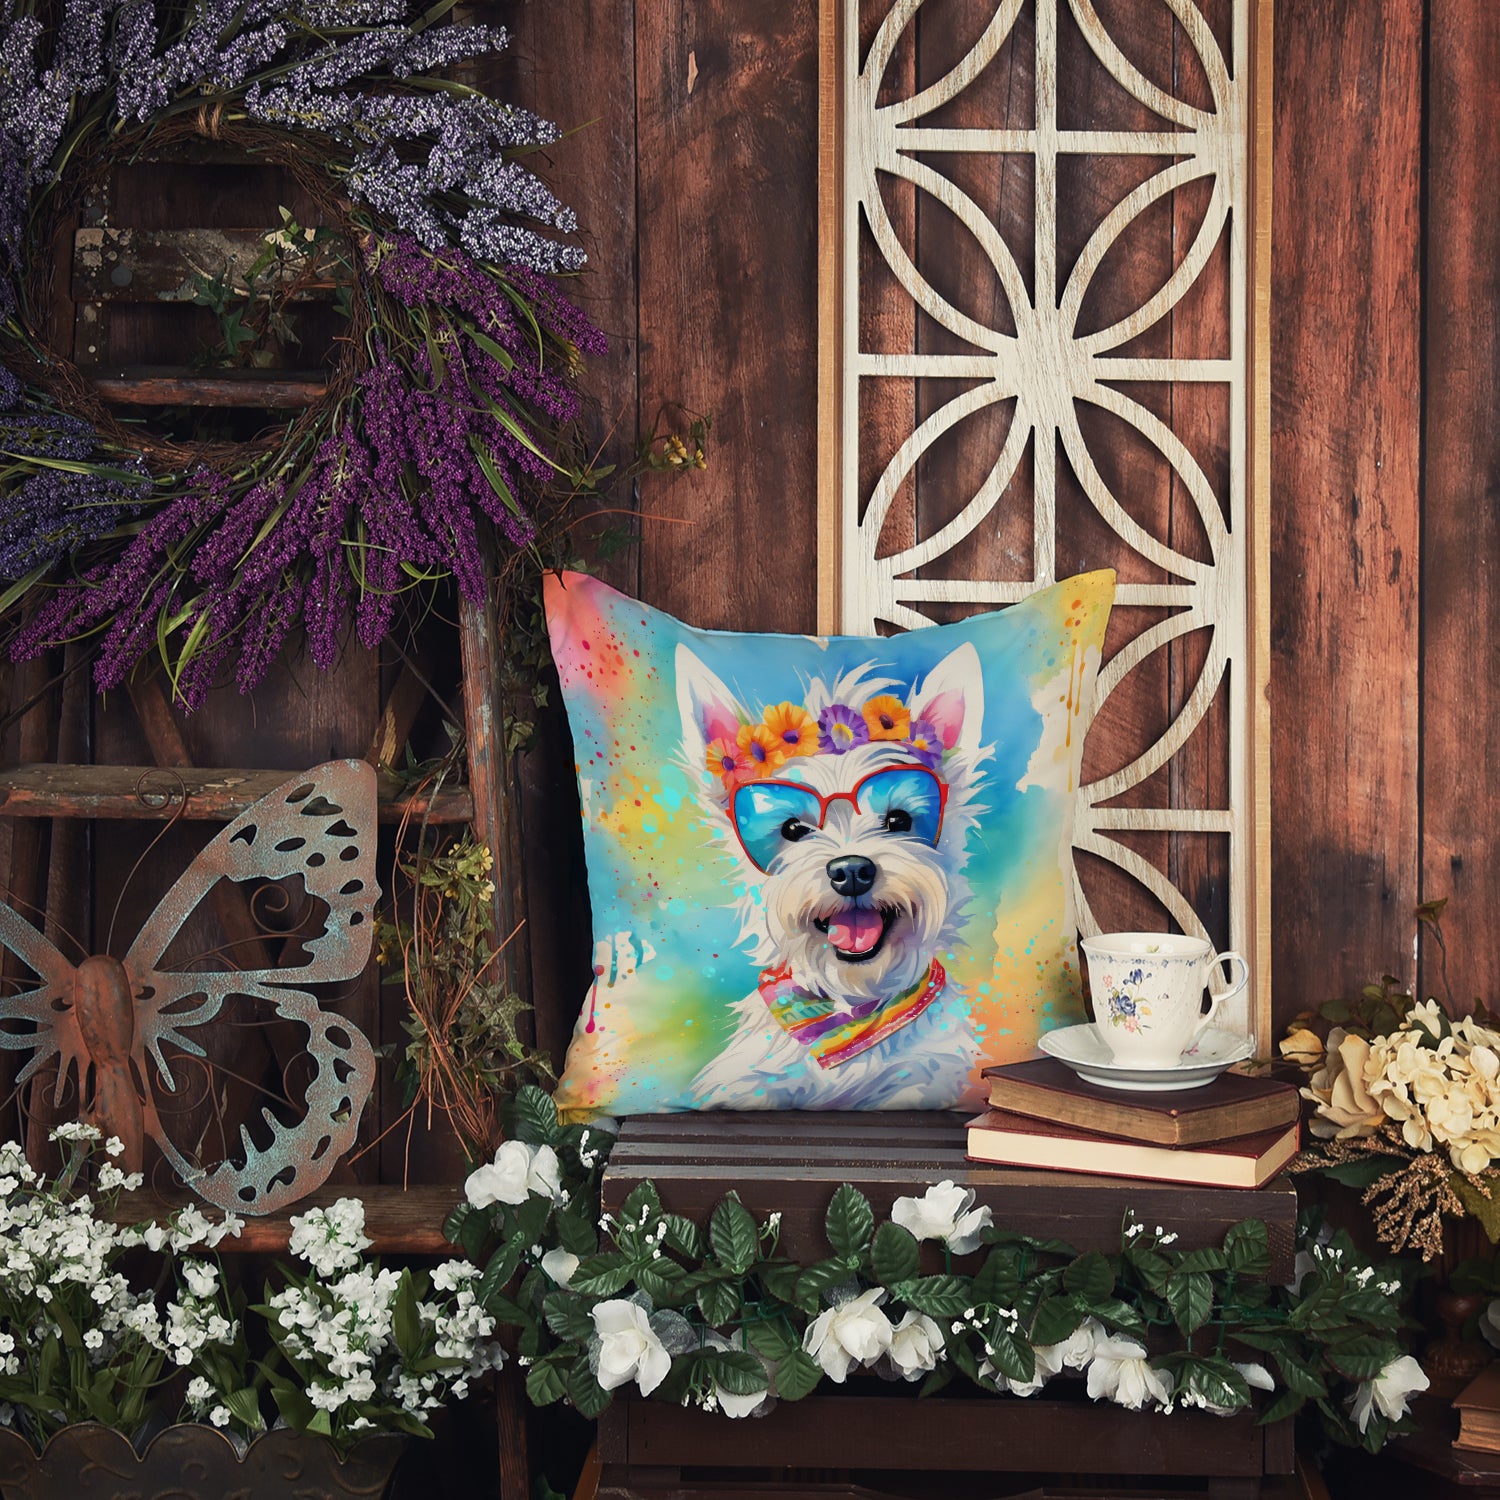 Westie Hippie Dawg Fabric Decorative Pillow